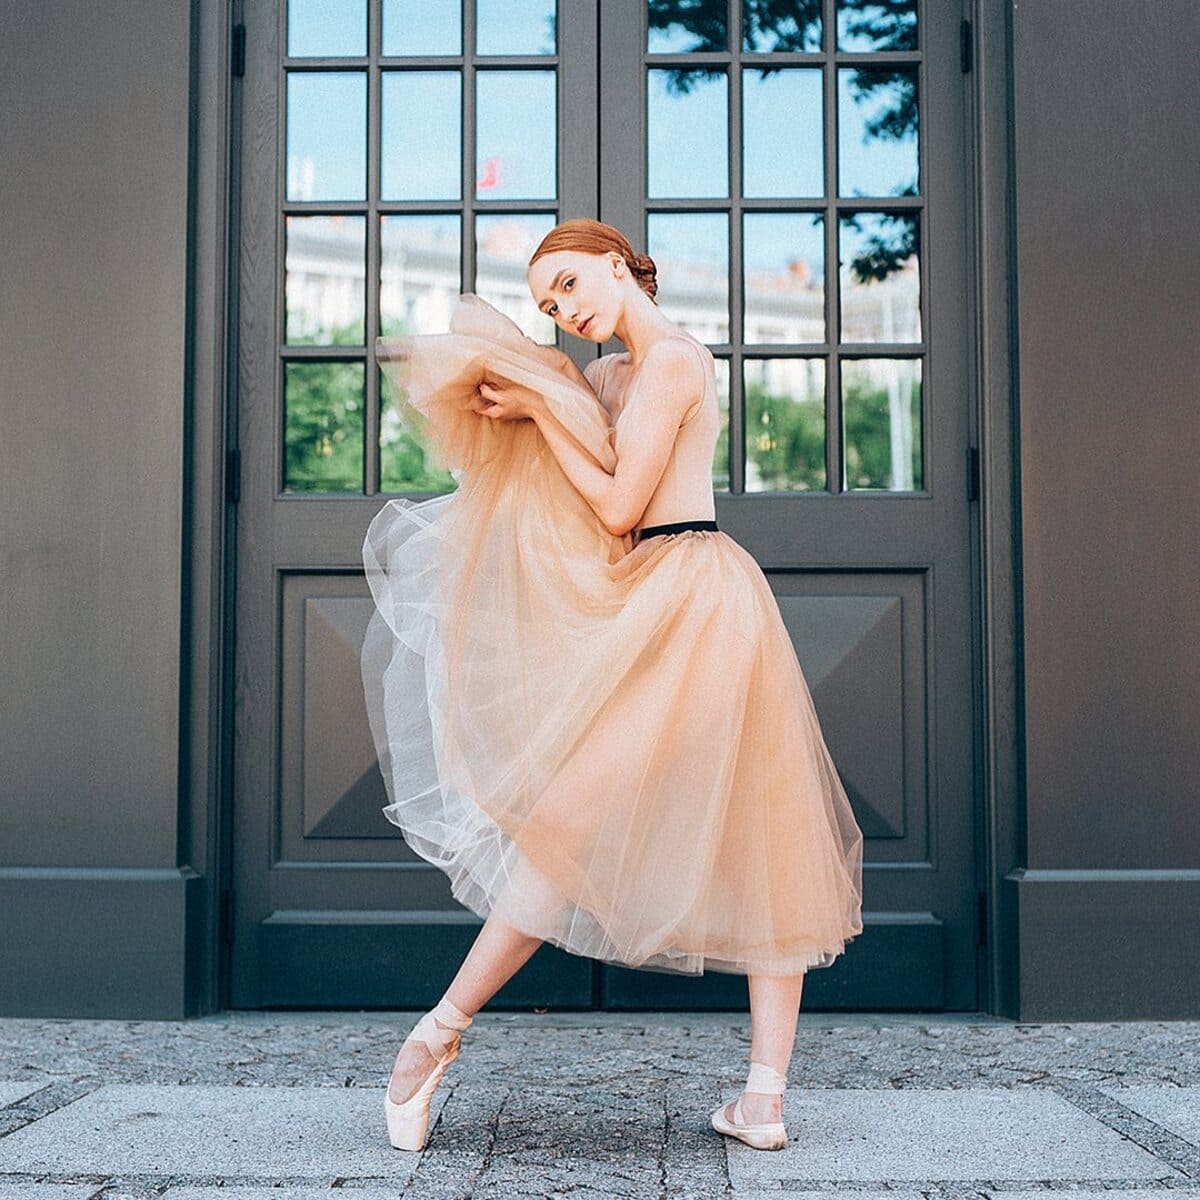 Анастасия Смирнова: «Хочется, чтобы искусство балета всегда оставалось  актуальным» - Образ Жизни. Москва